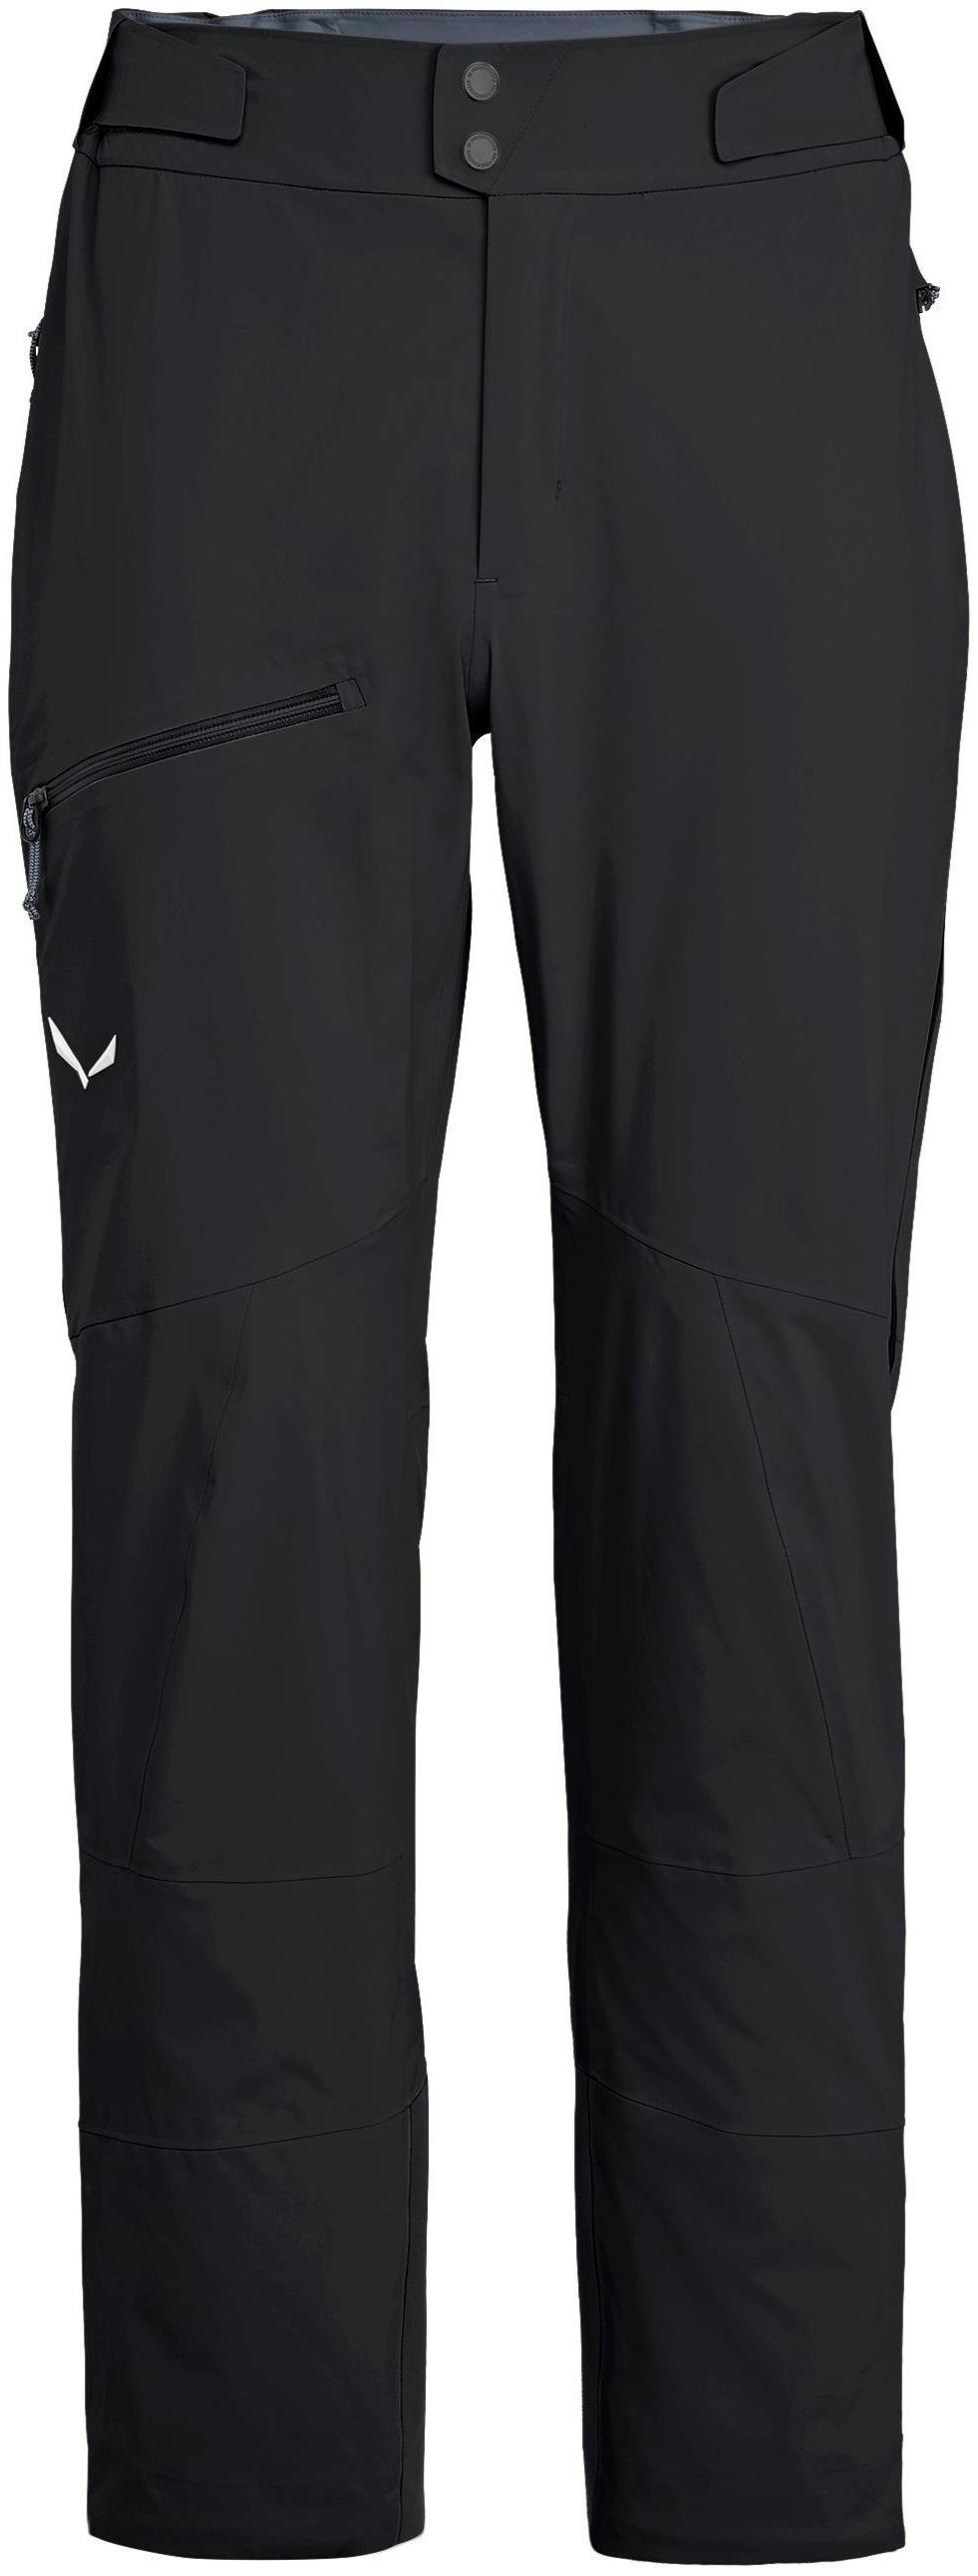 фото Спортивные брюки мужские salewa ortles 3 gtx pro m pnt черные xl